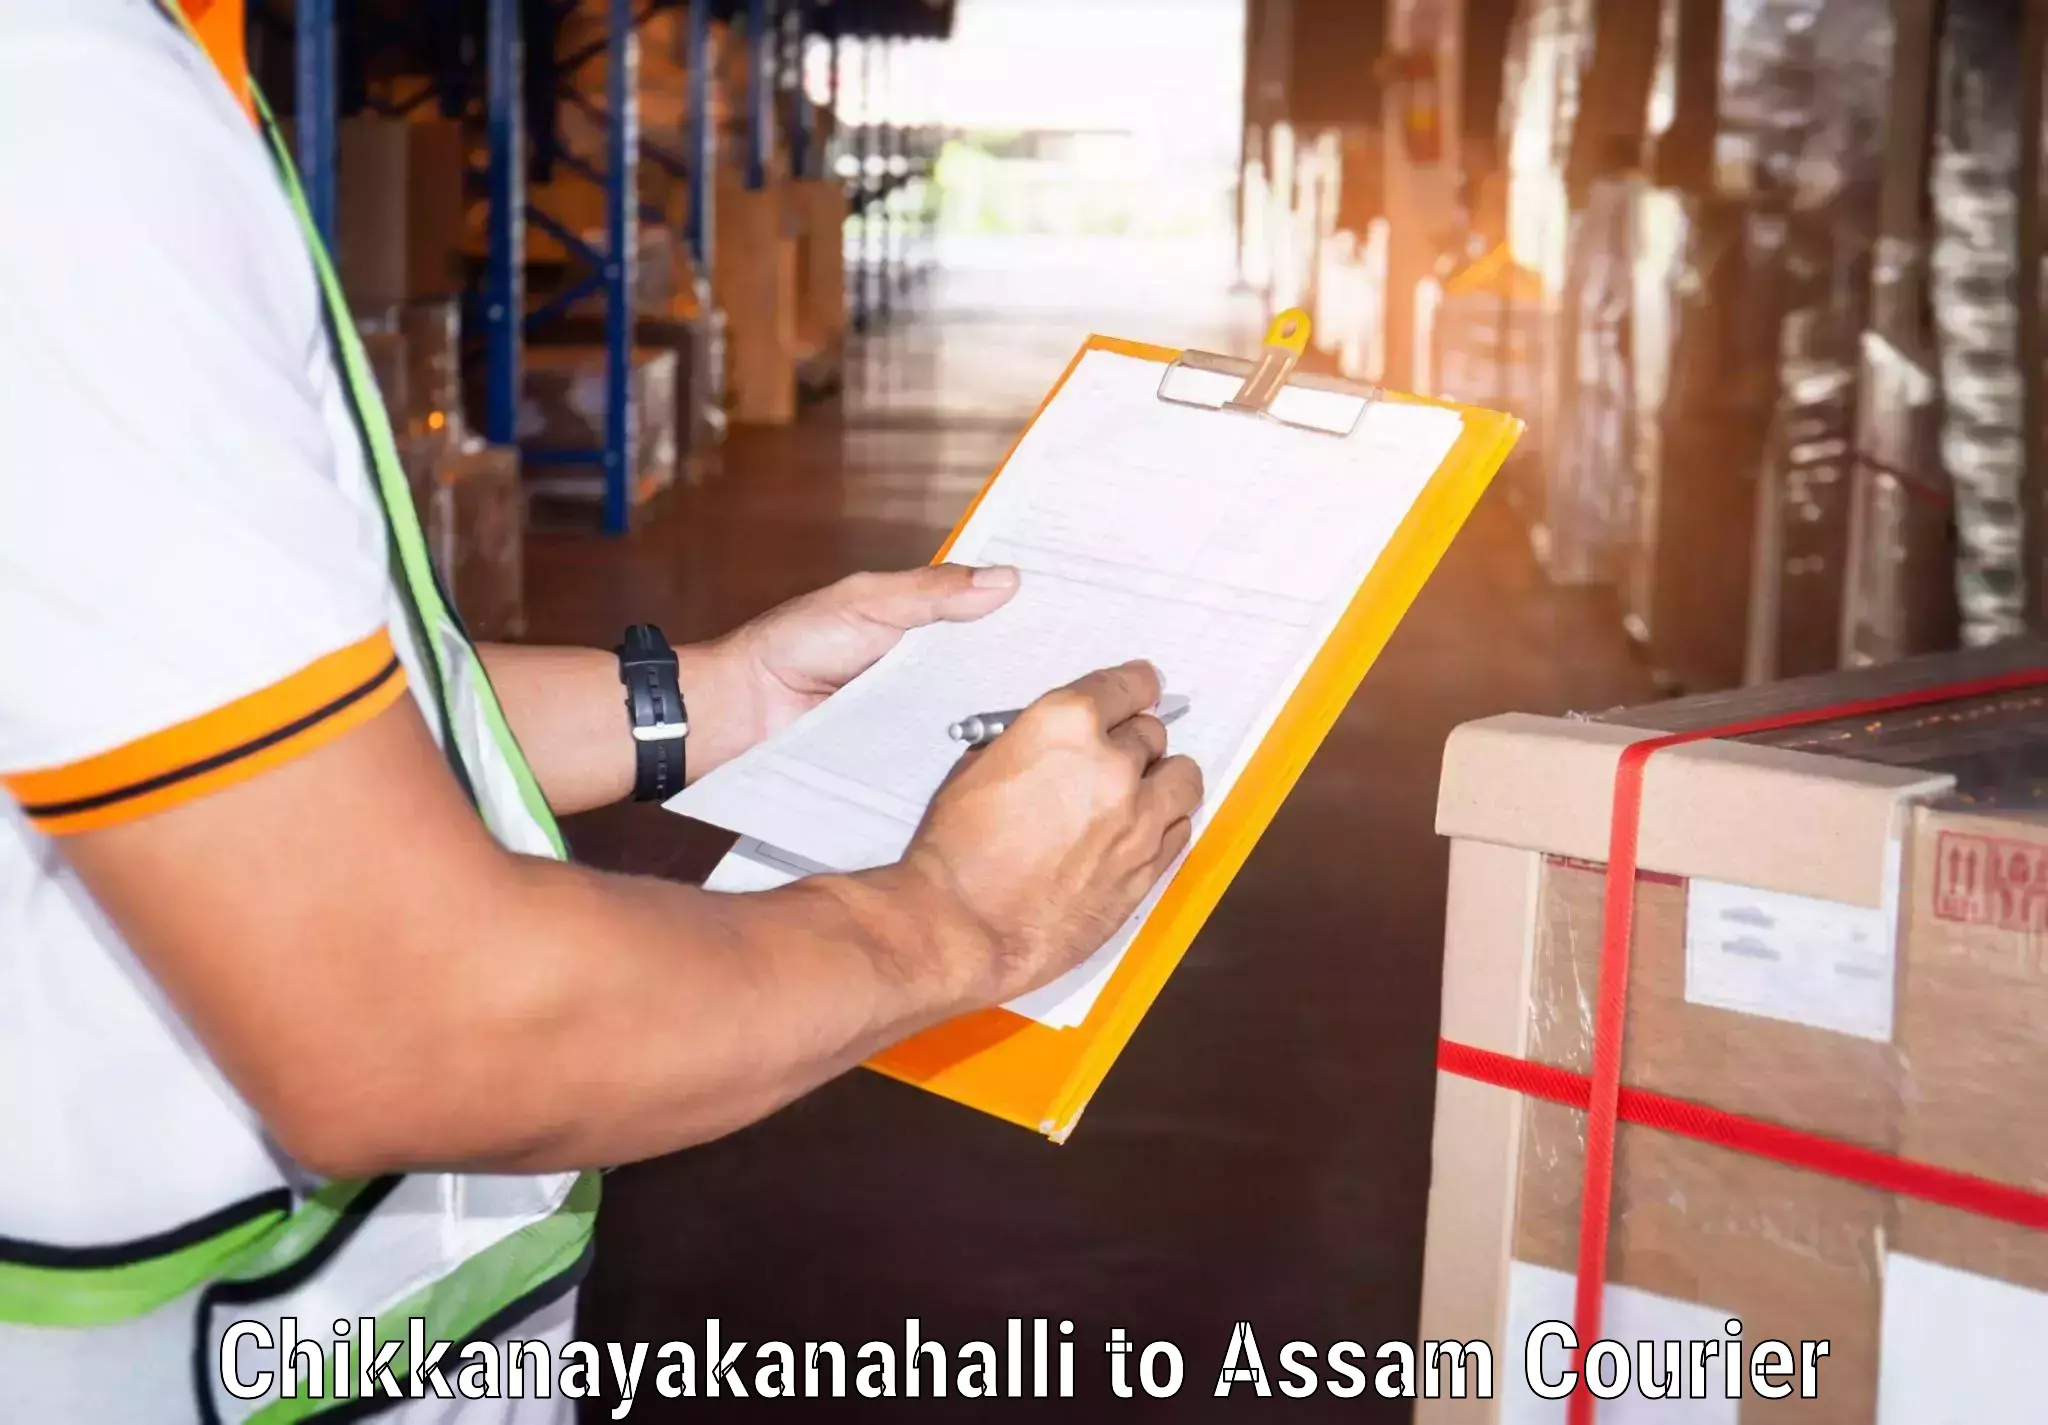 Professional courier handling Chikkanayakanahalli to Dhekiajuli